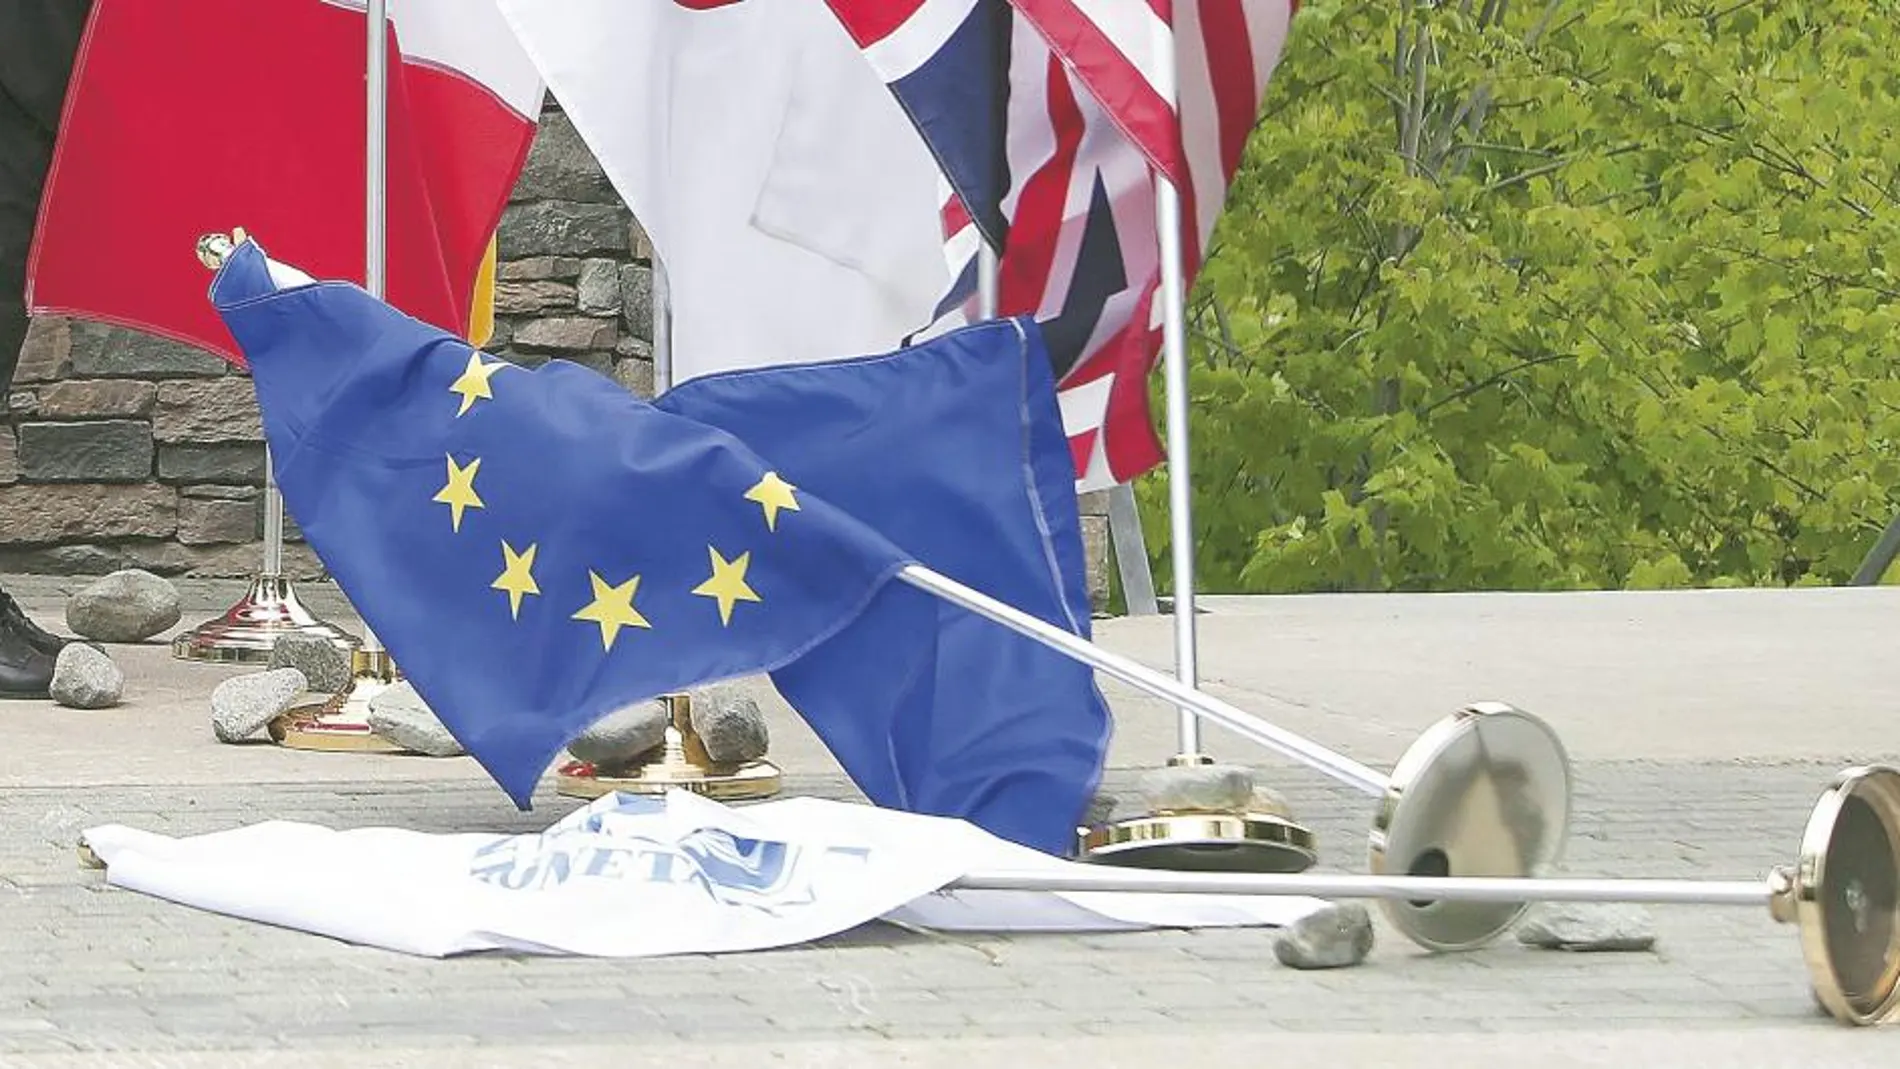 Una súbita ráfaga de viento derribó la bandera de la Unión Europea durante la cumbre de ministros de Economía del G7